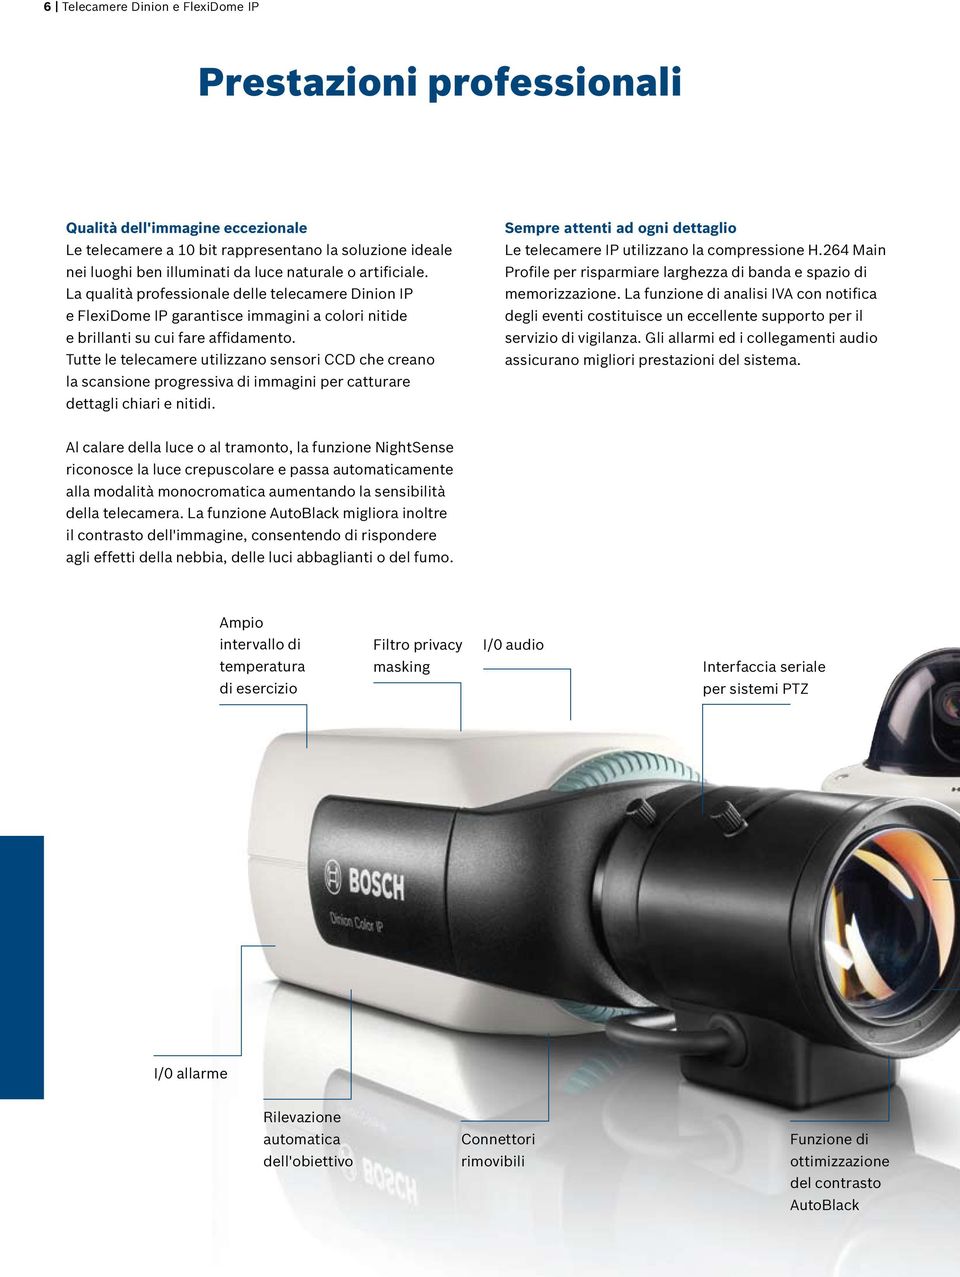 Tutte le telecamere utilizzano sensori CCD che creano la scansione progressiva di immagini per catturare dettagli chiari e nitidi.